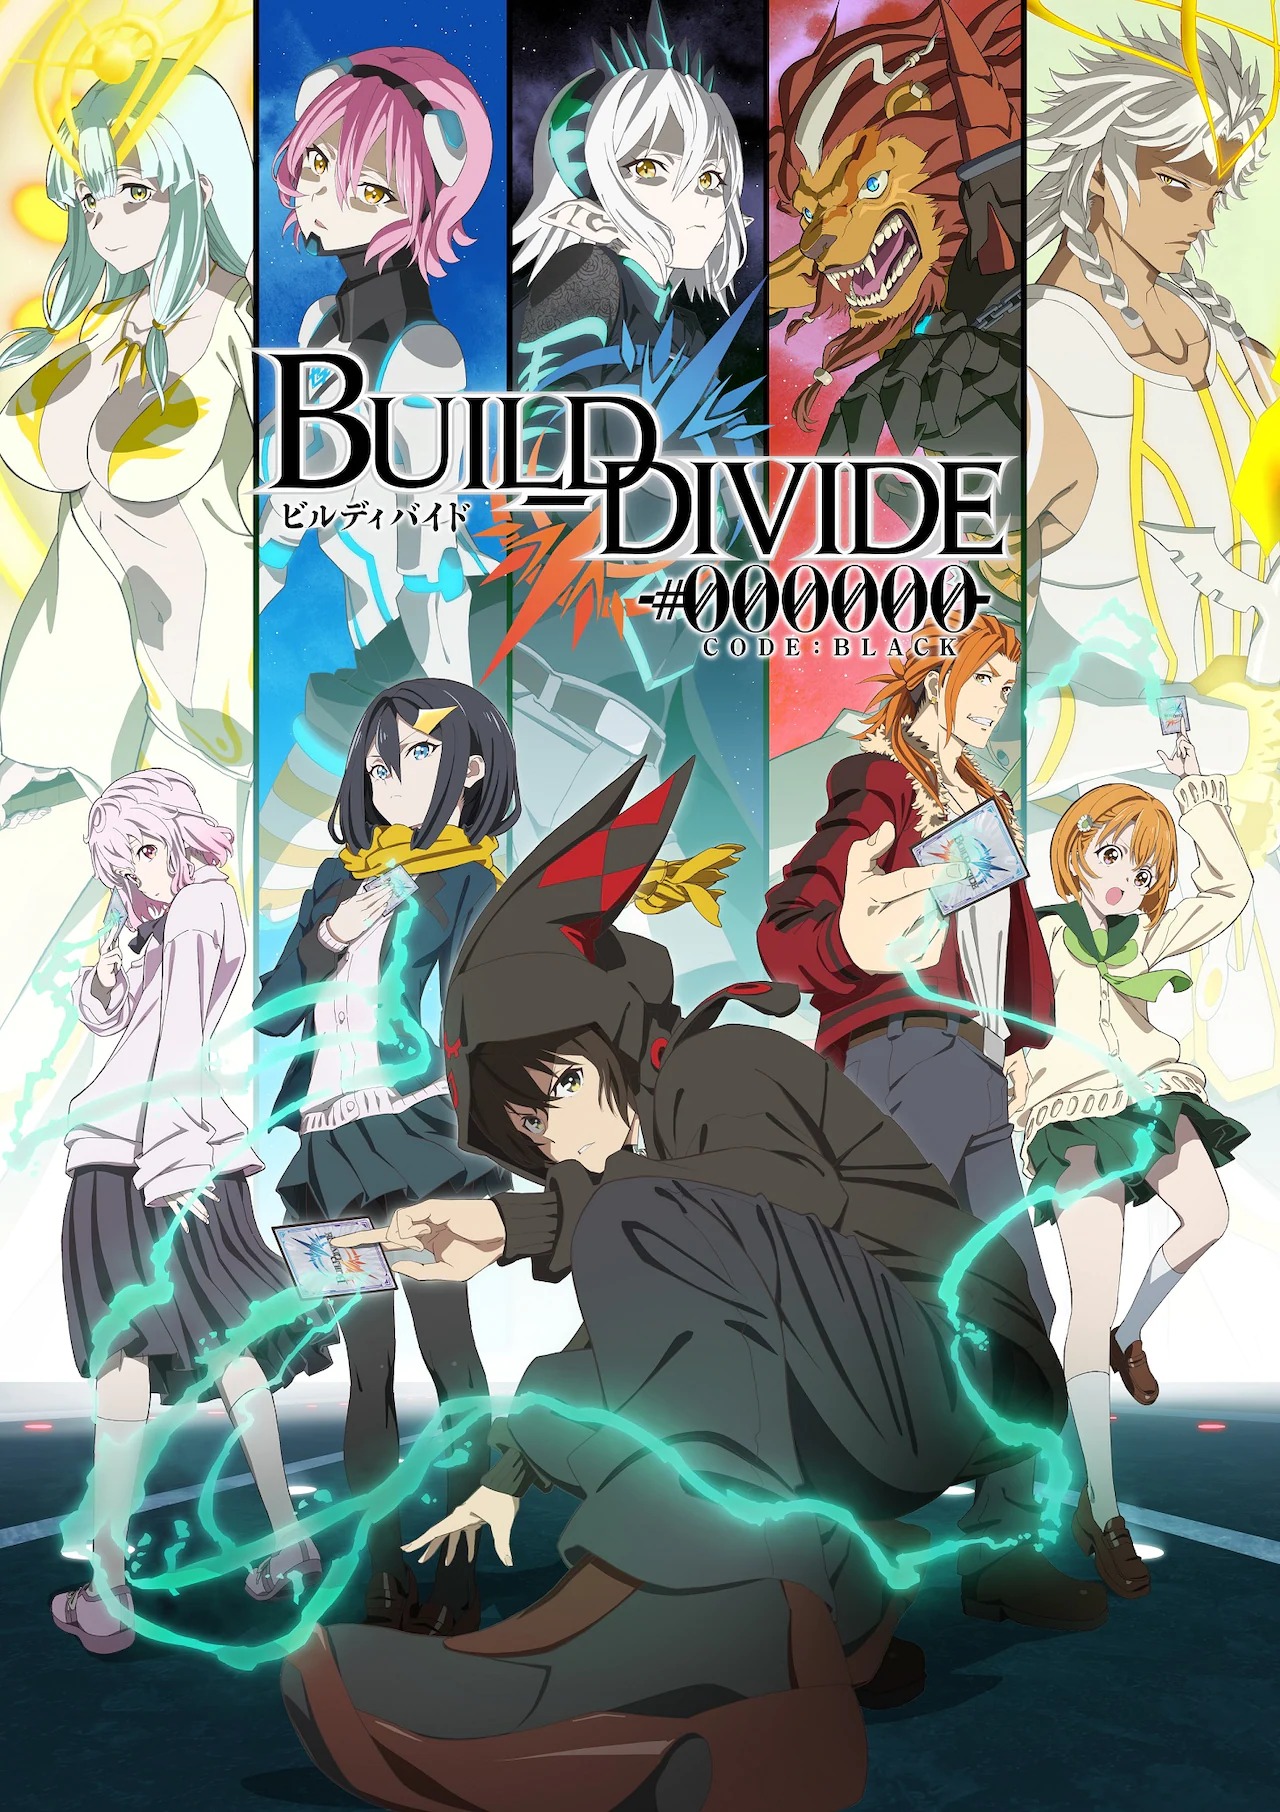 Build Divide